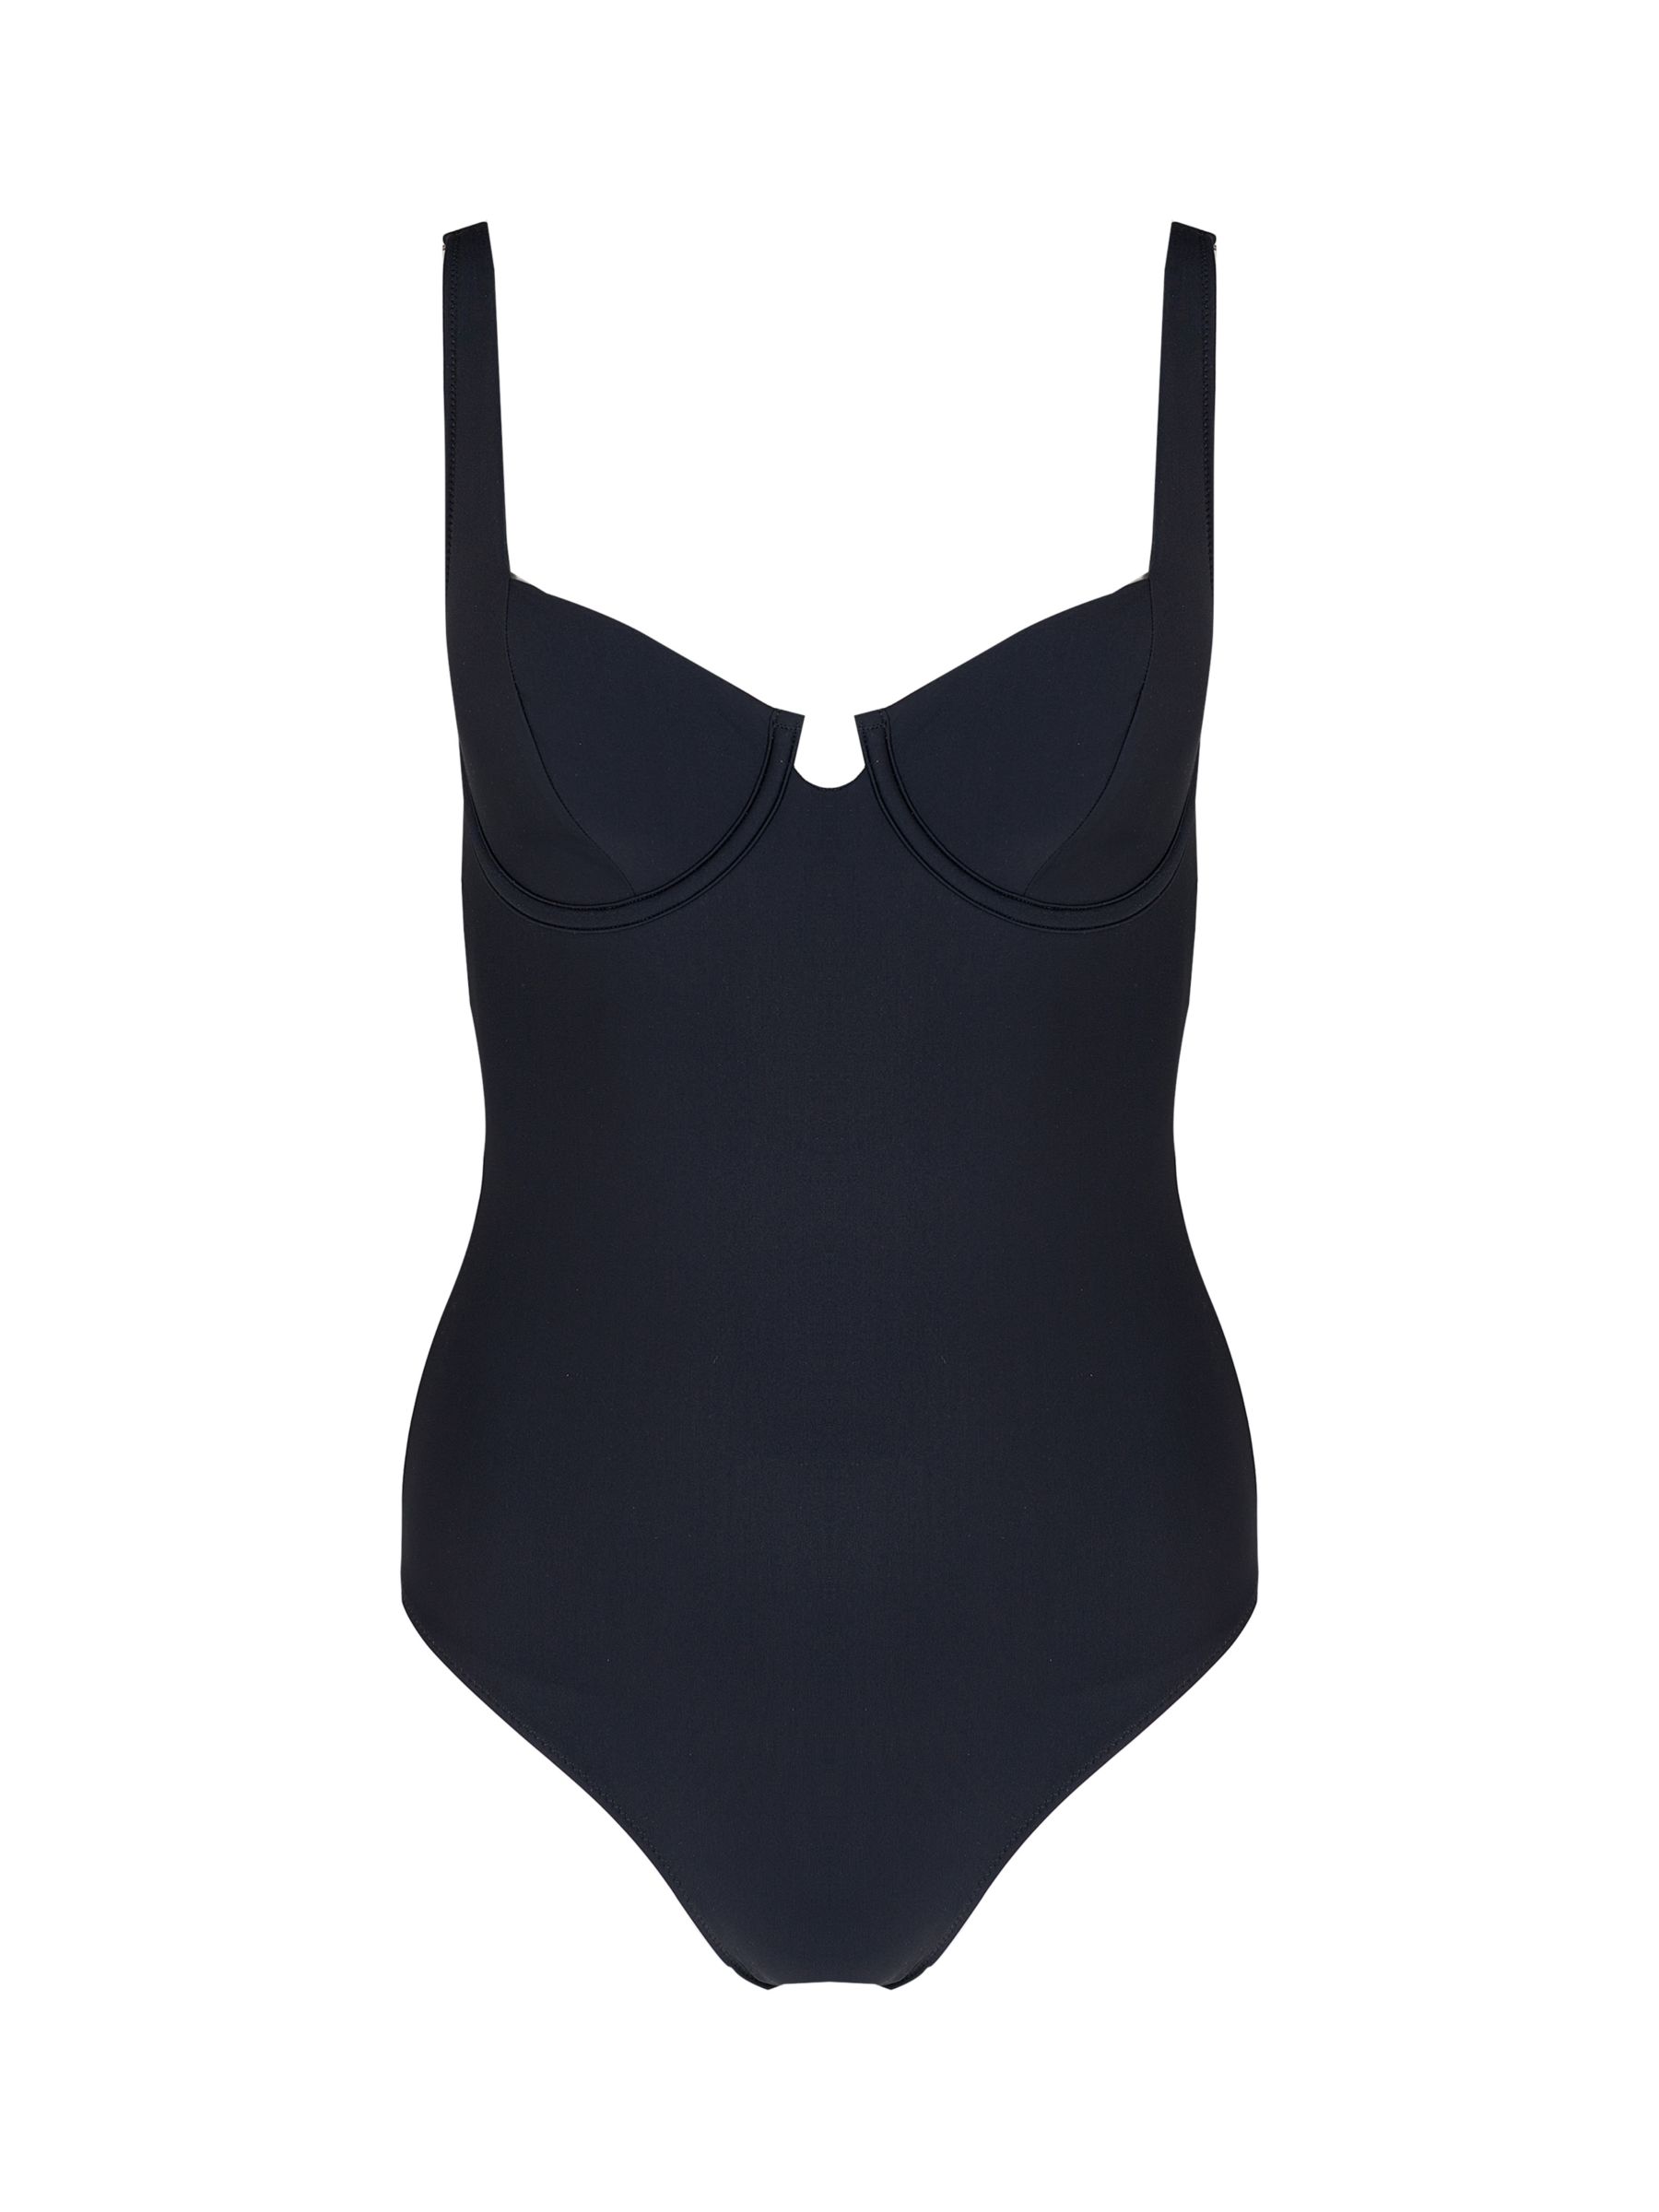 Black Laguna Swim Short, Women's Casual Wear